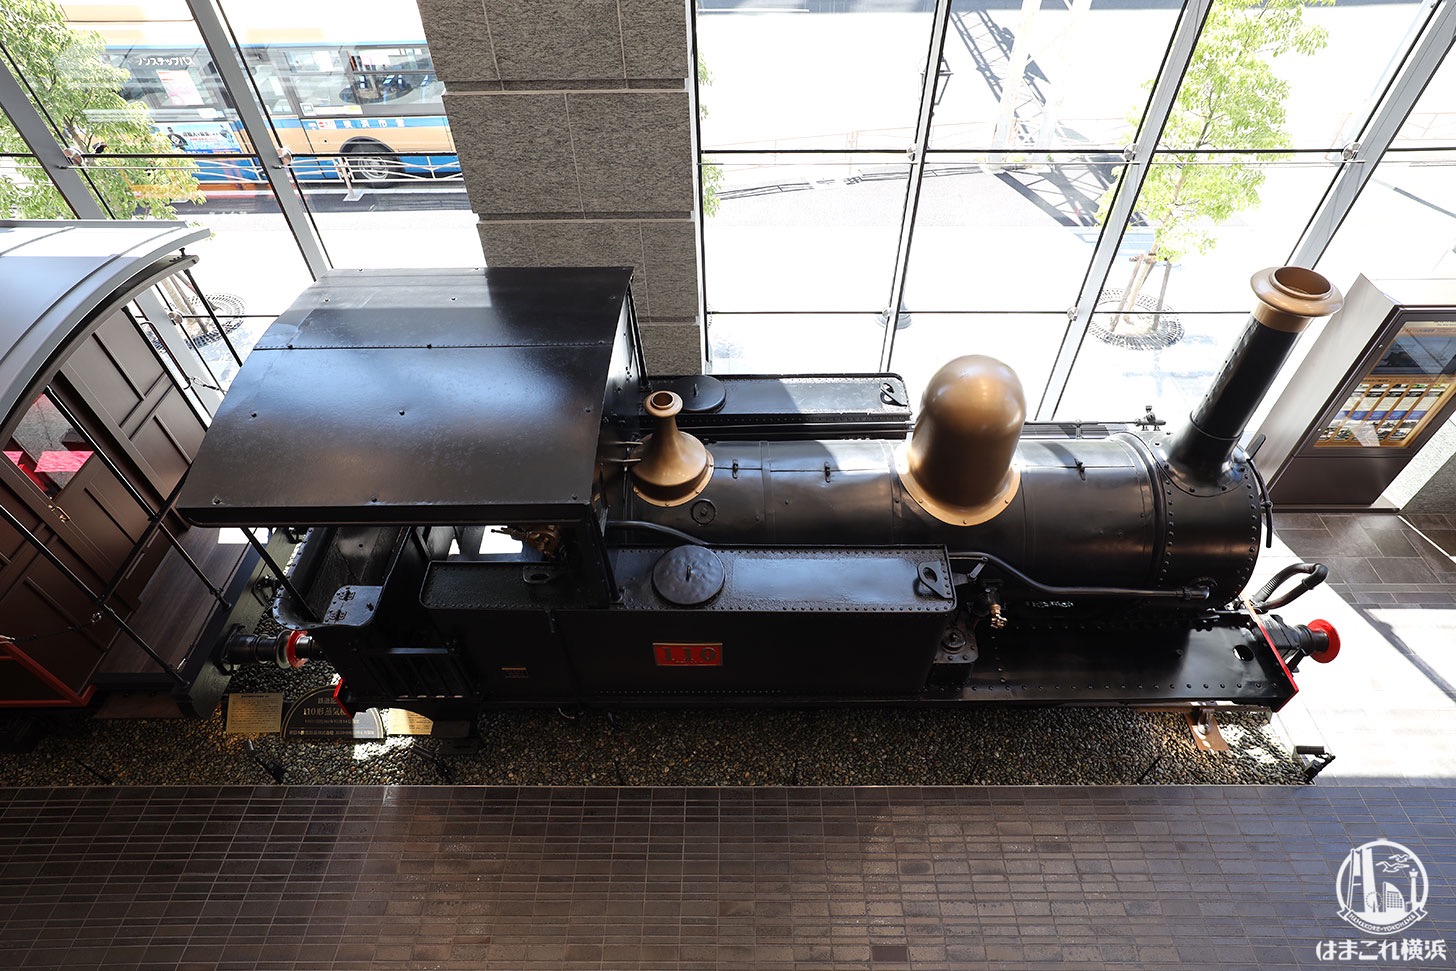 旧横濱鉄道歴史展示「旧横ギャラリー」に展示中の110形蒸気機関車